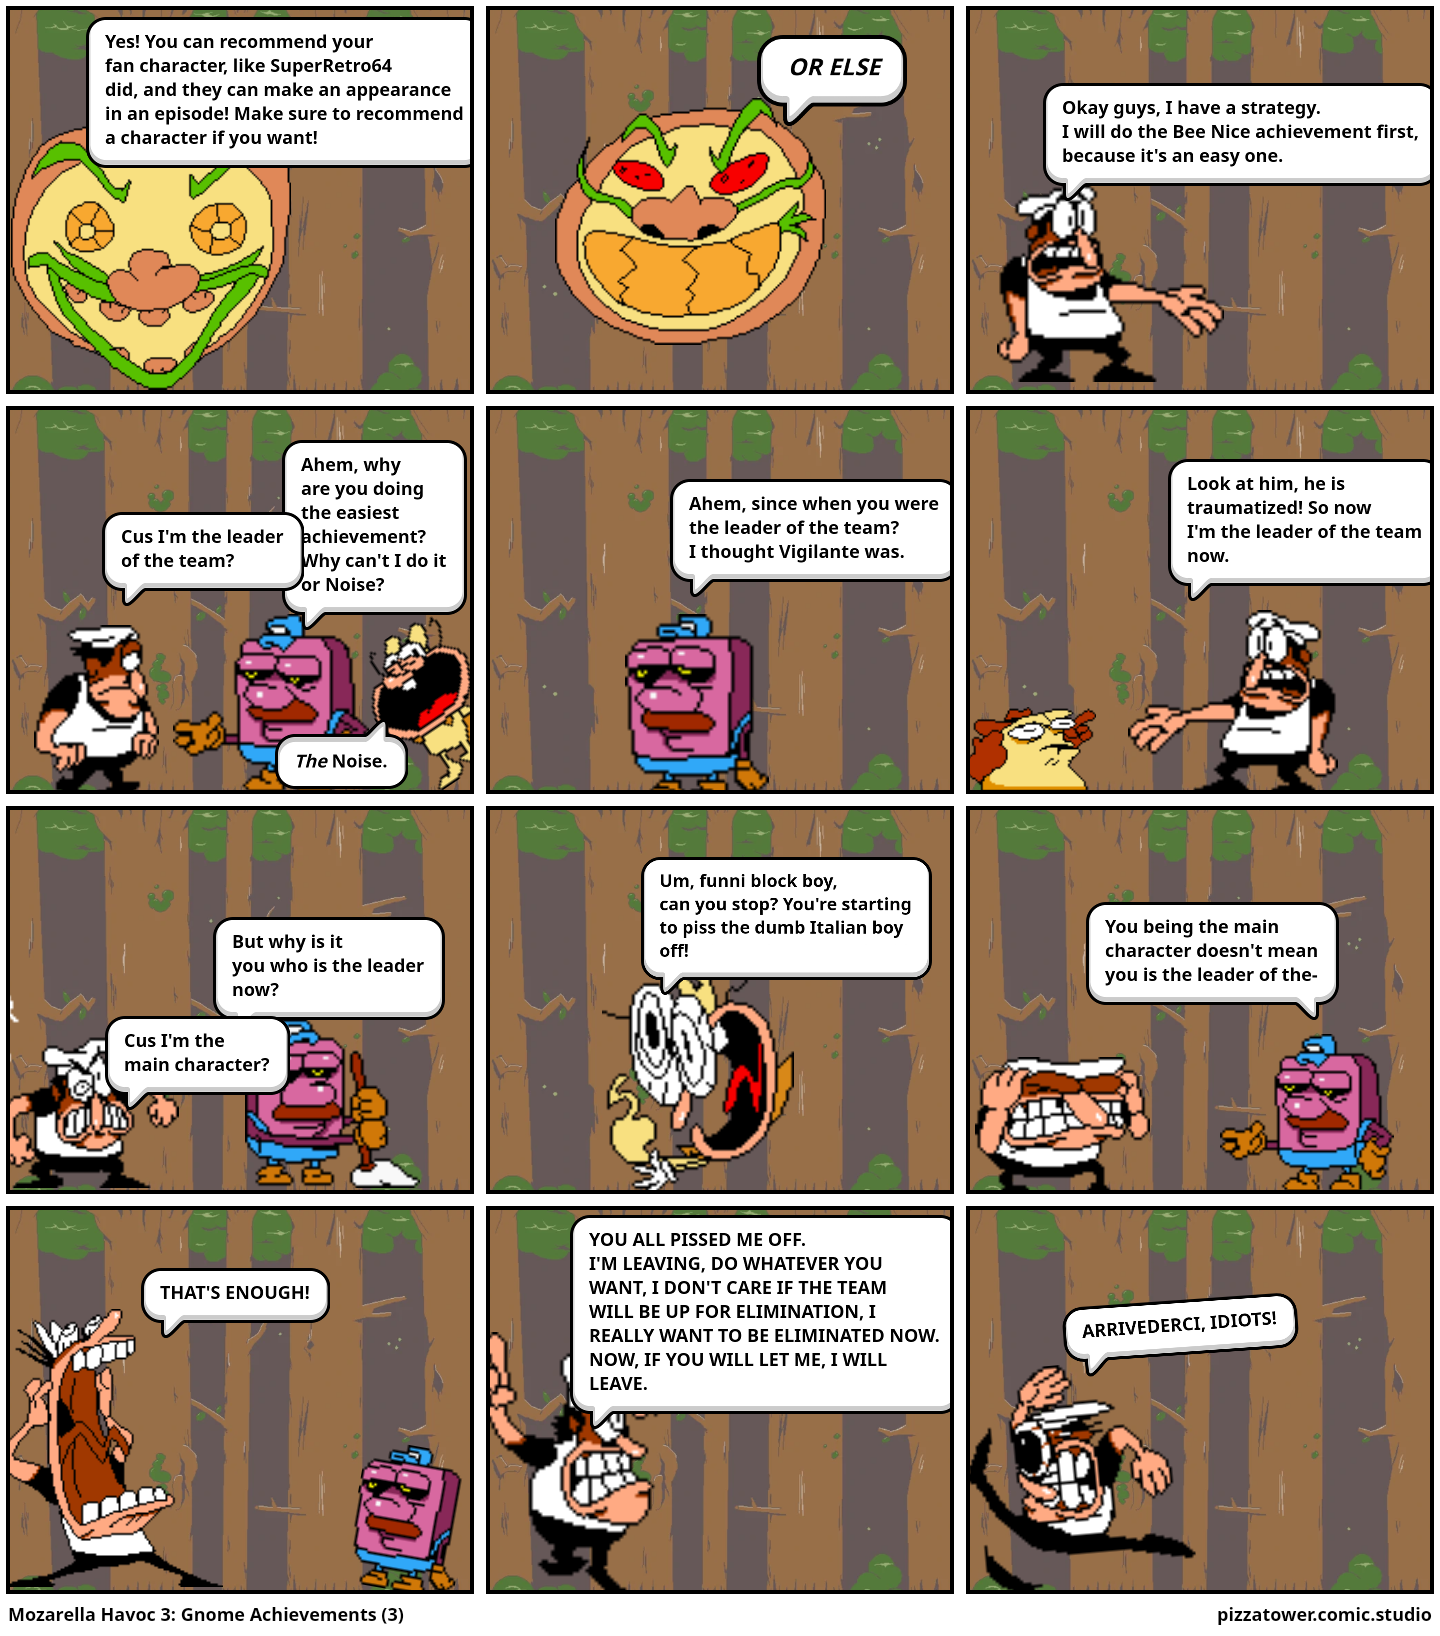 Mozarella Havoc 3: Gnome Achievements (3)